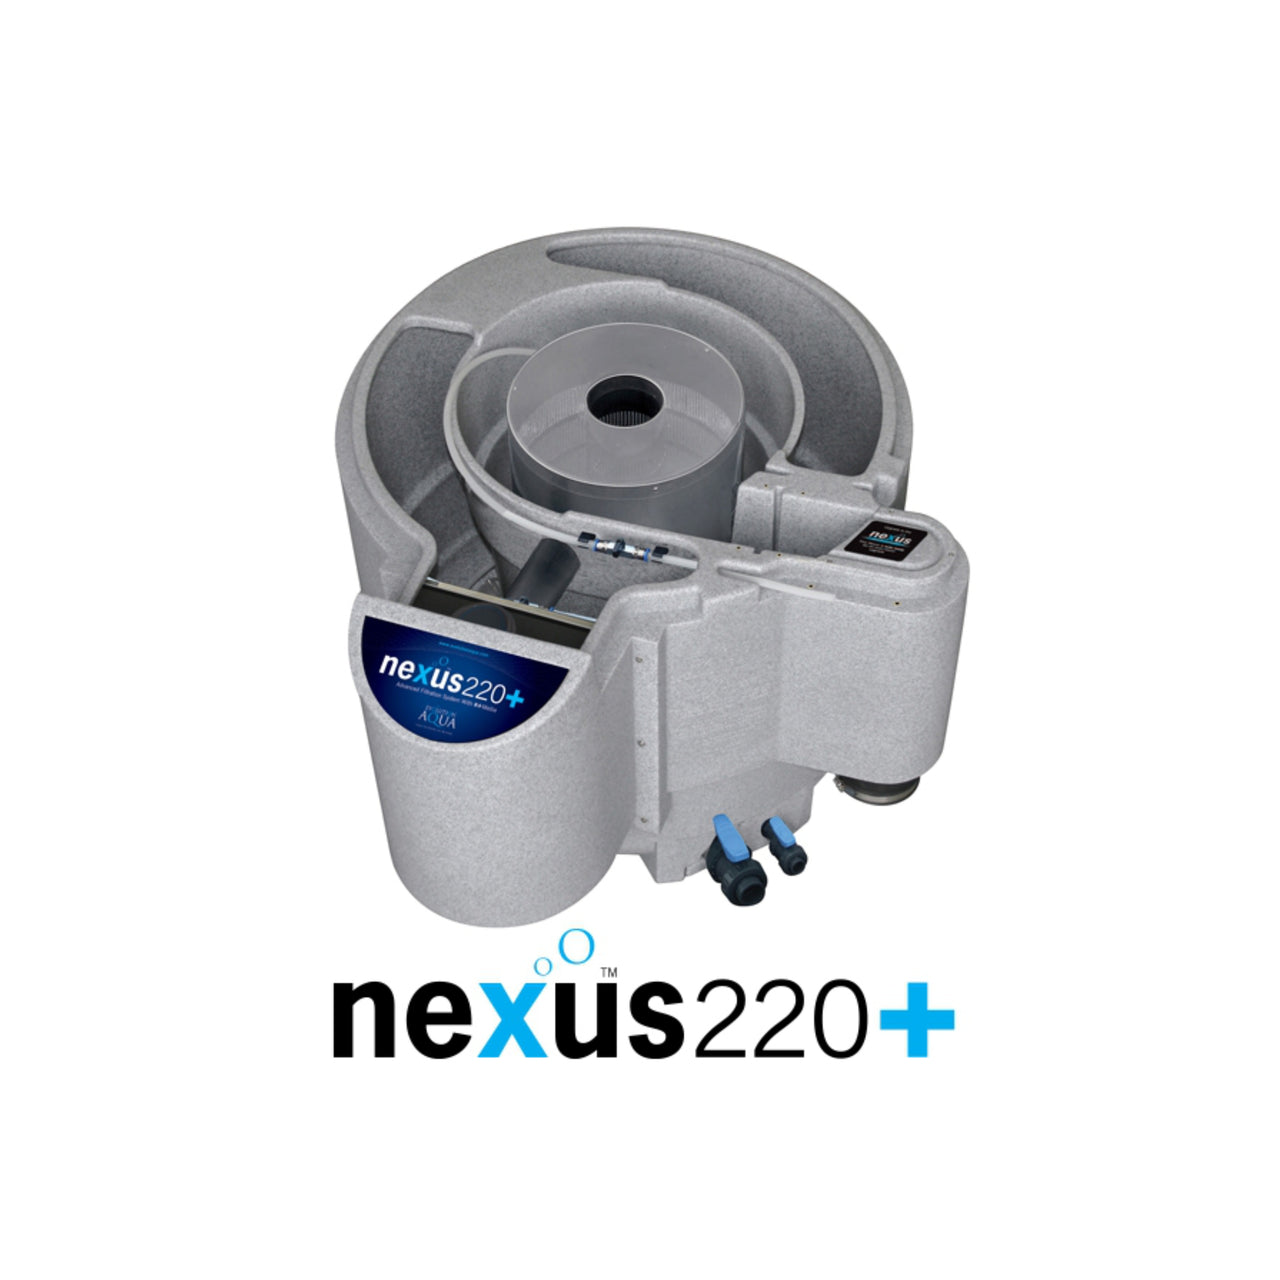 Nexus 220+